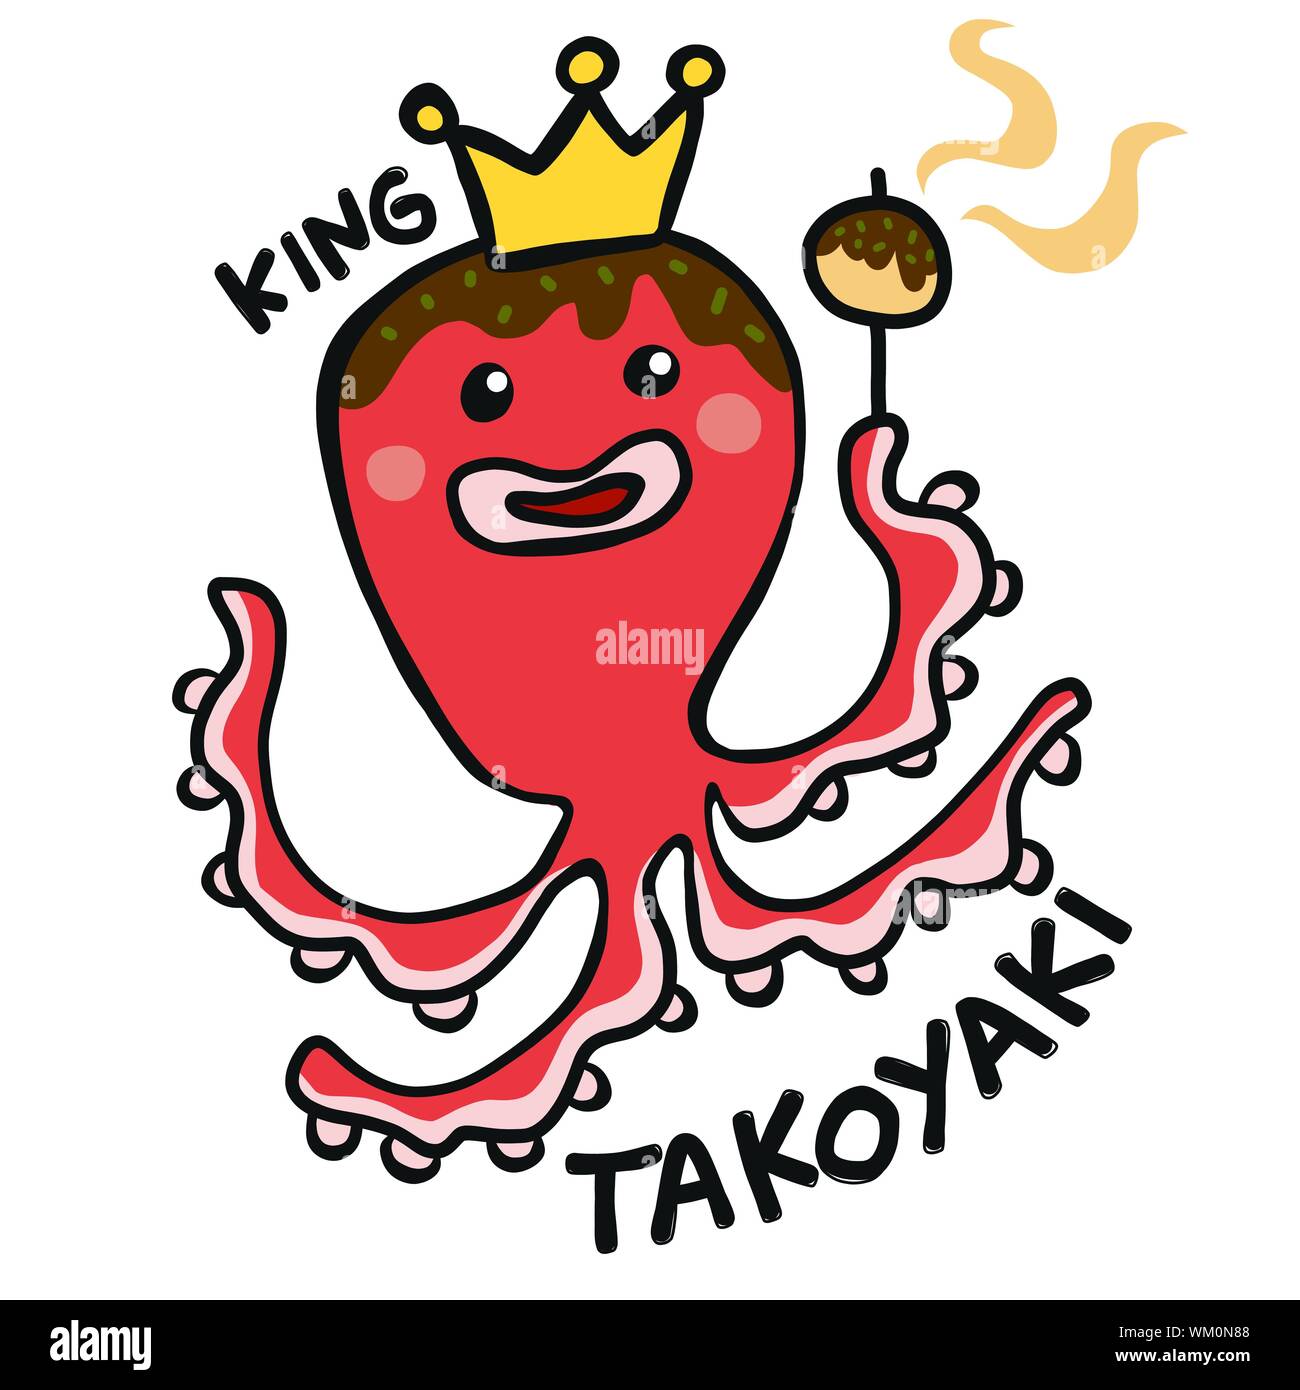 Japanese food King Takoyaki octopus cartoon vector illustration doodle style Stock Vector